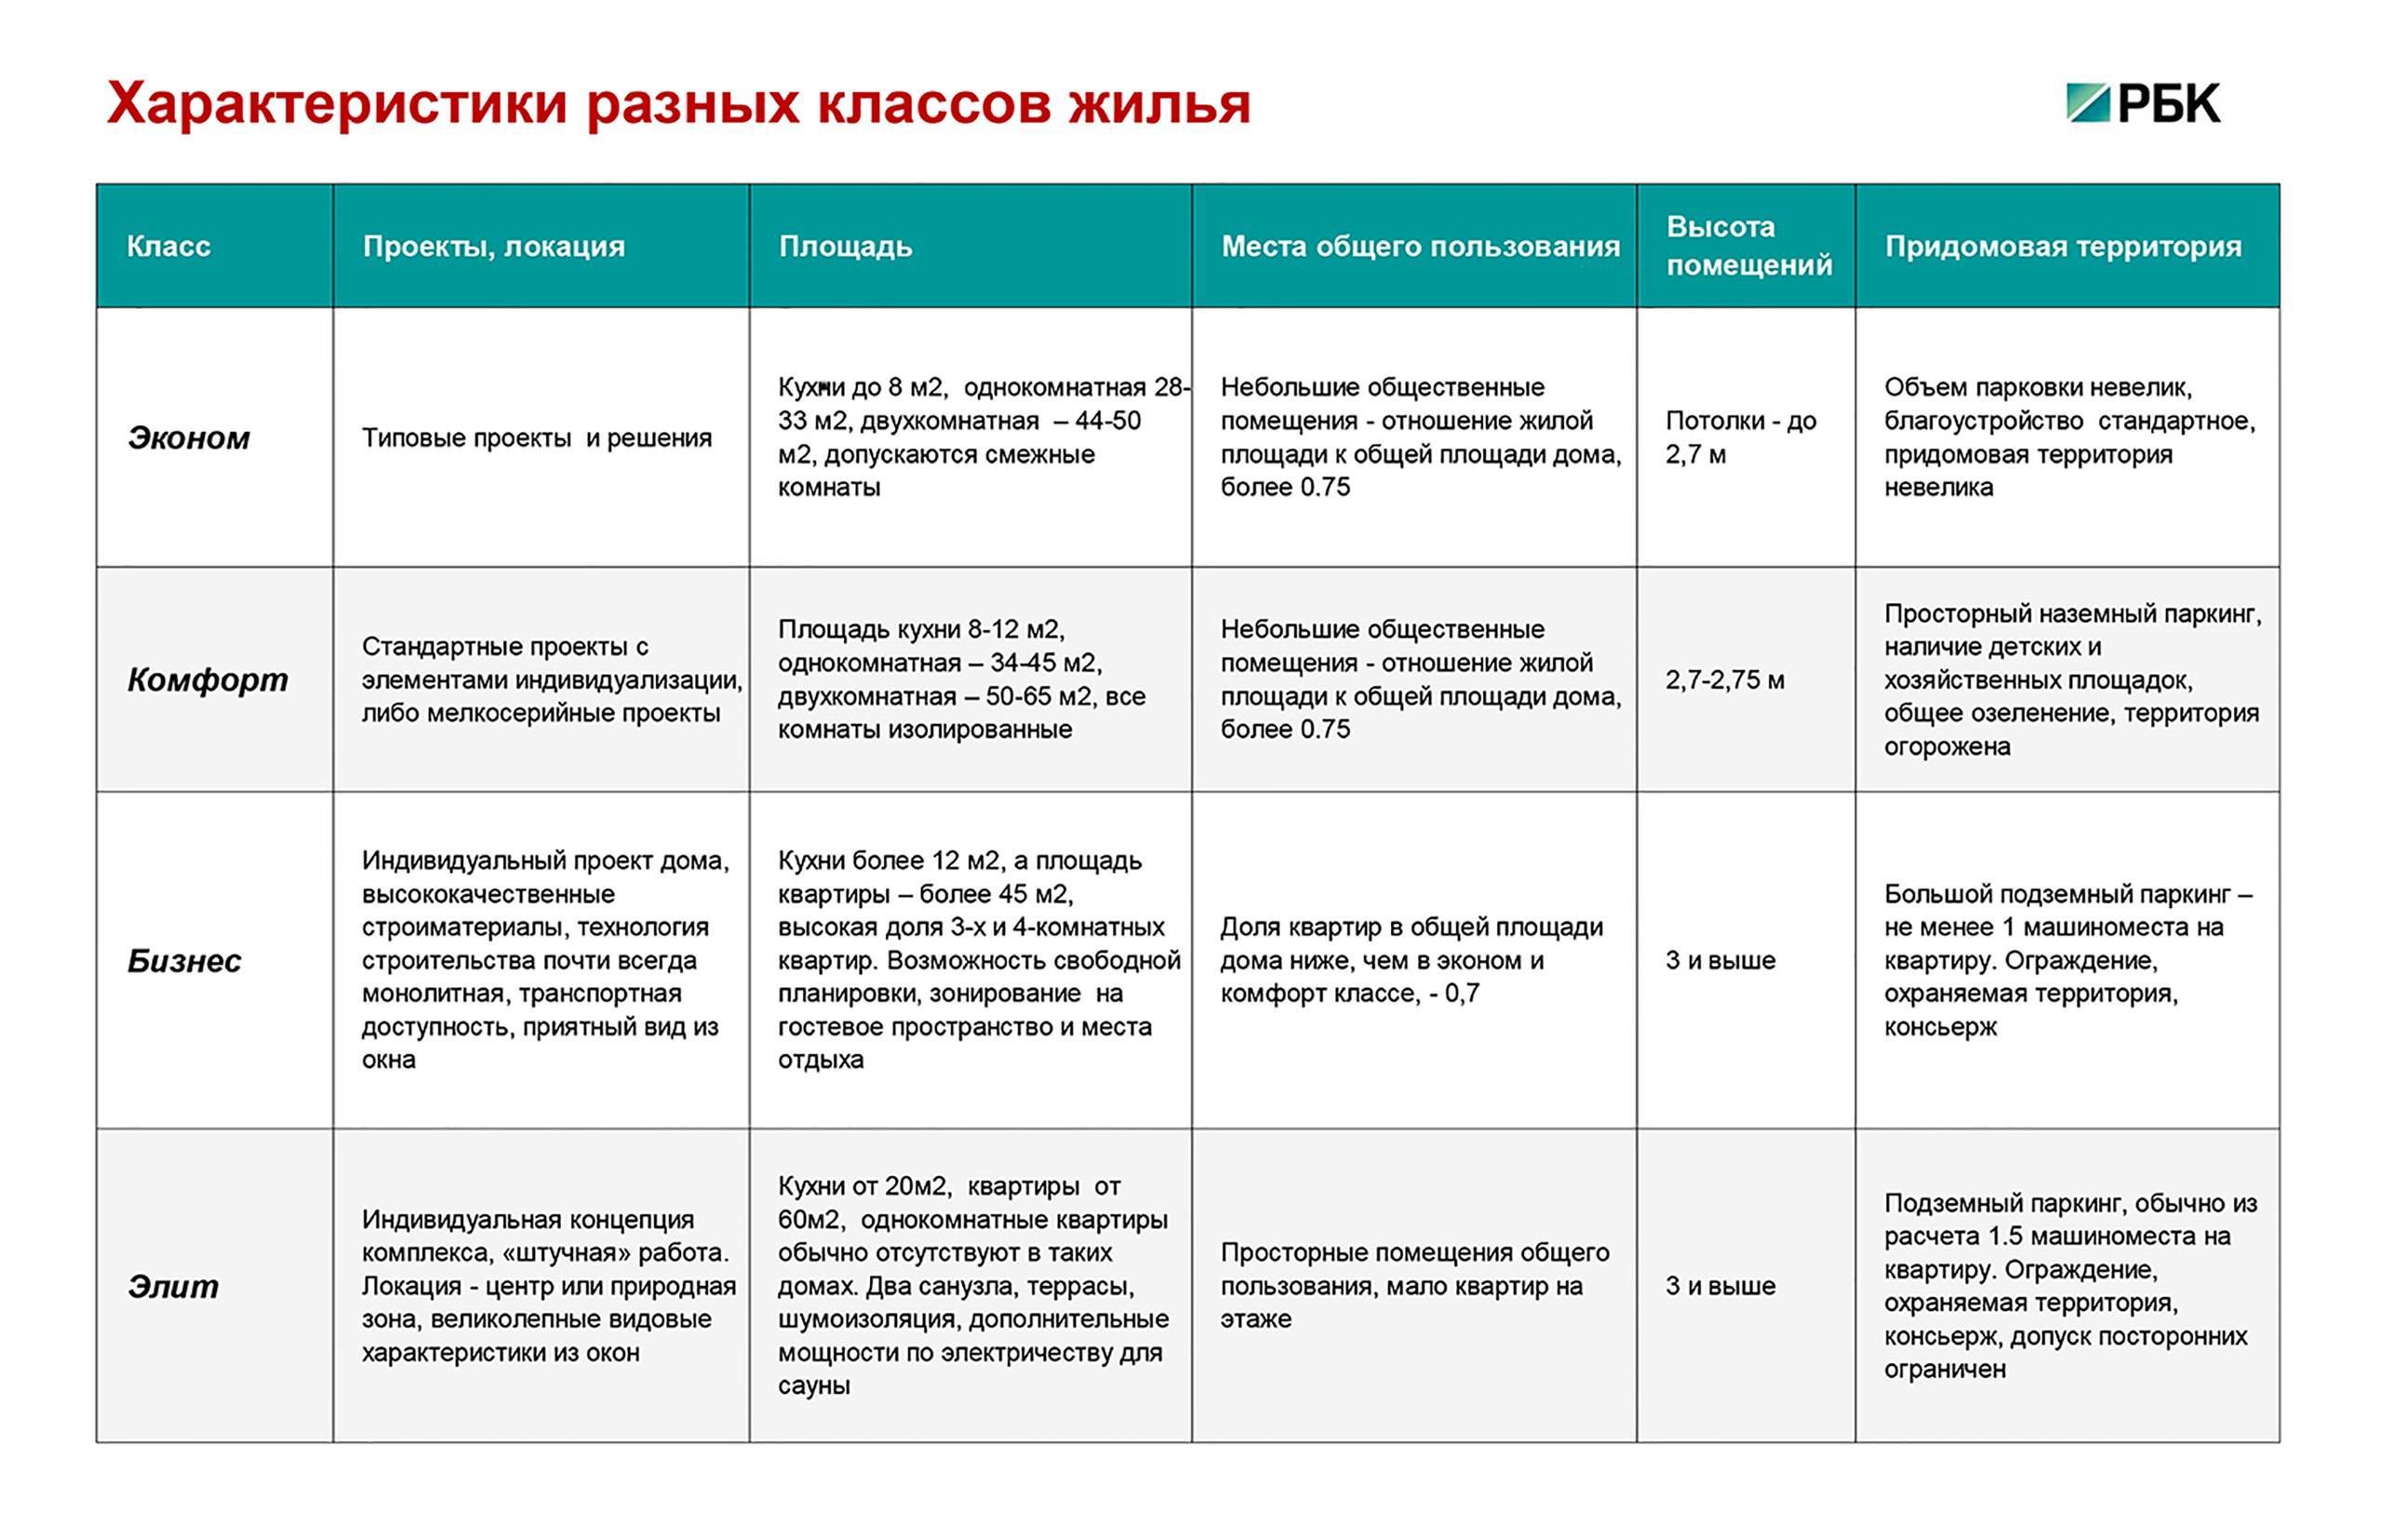 Стало известно, какой хотят сделать новую российскую систему высшего образования / skillbox media